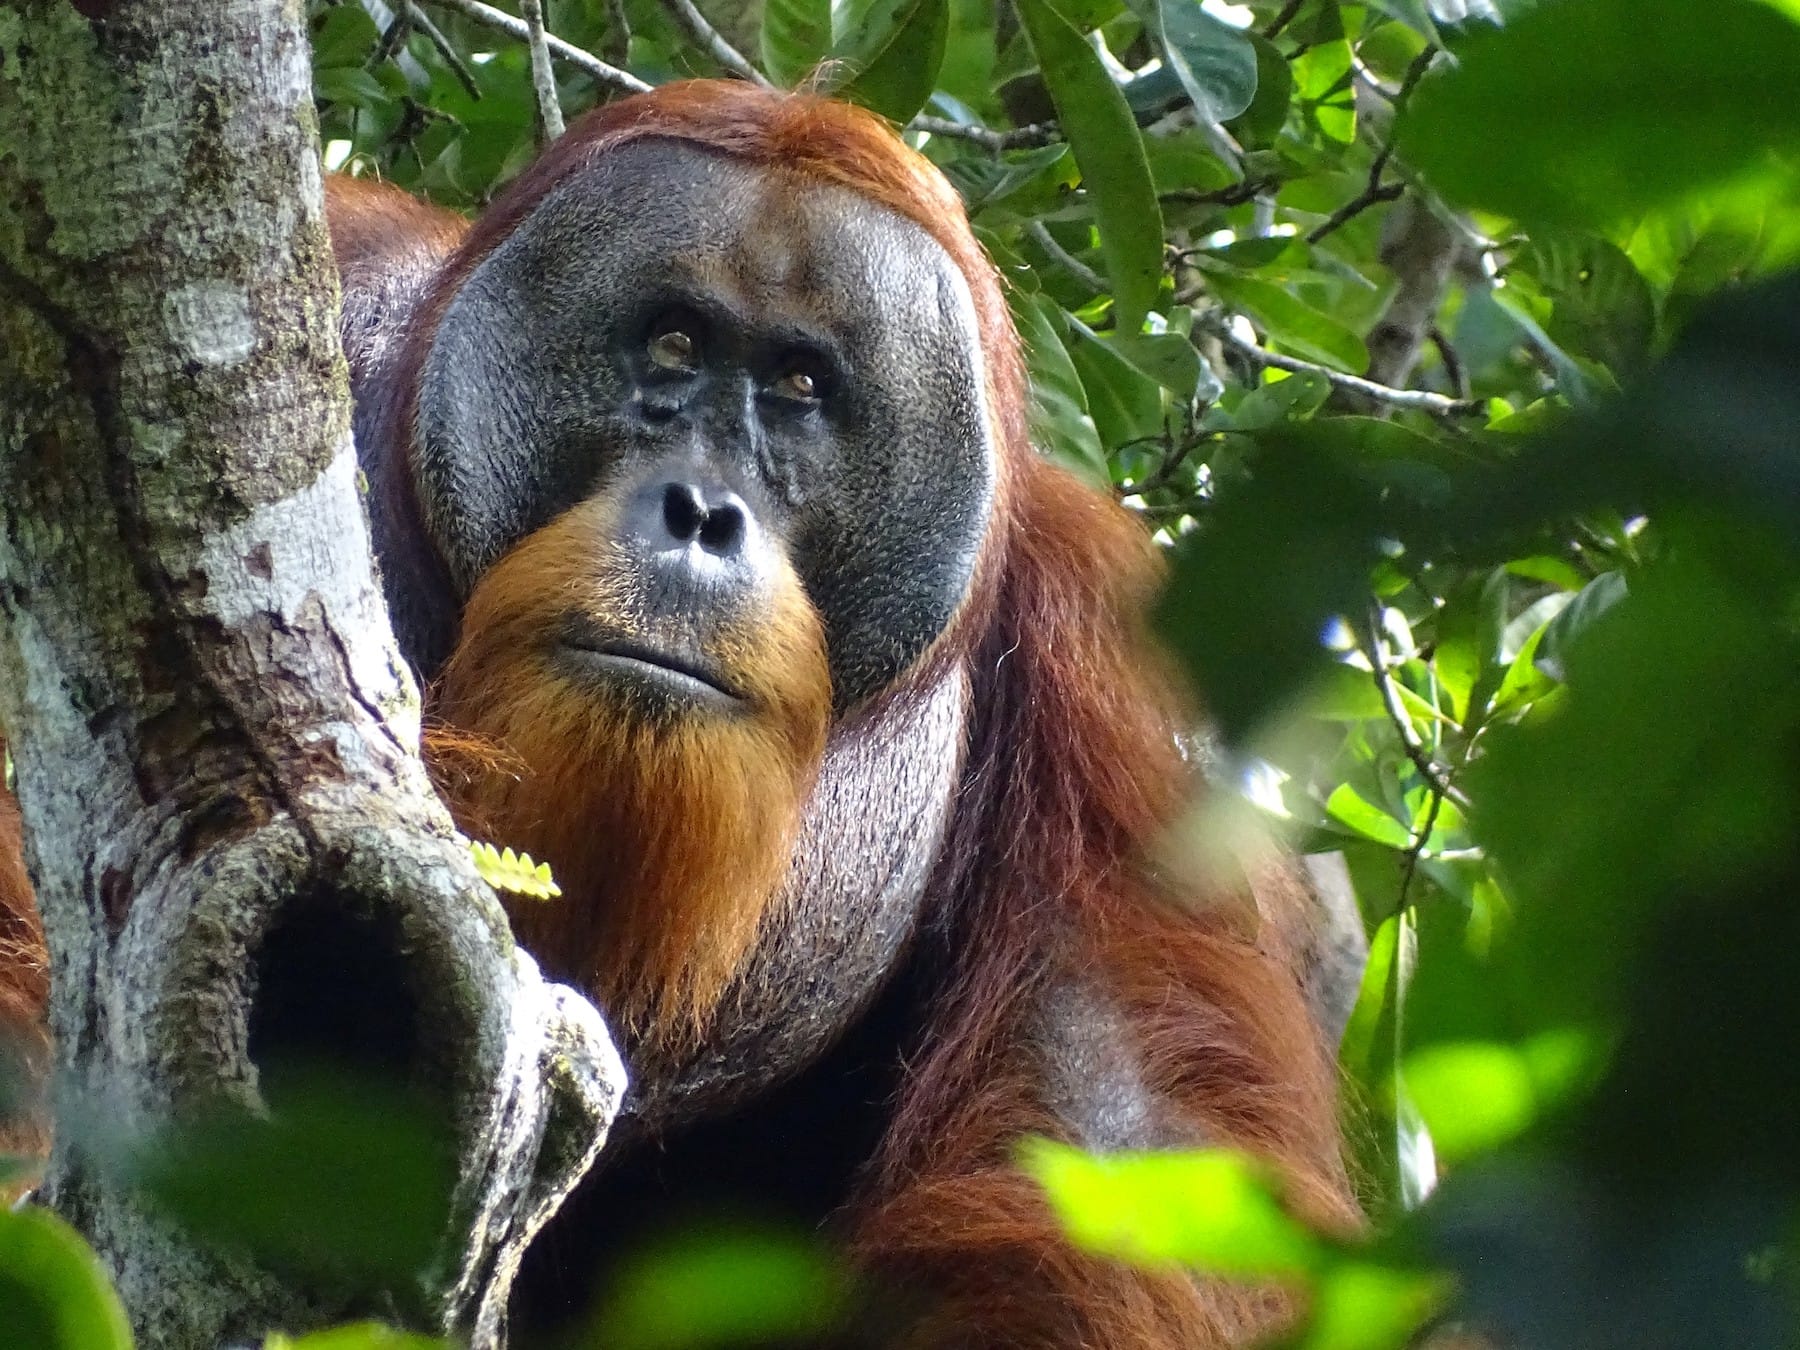 rakus indonesia orangutan heals wound